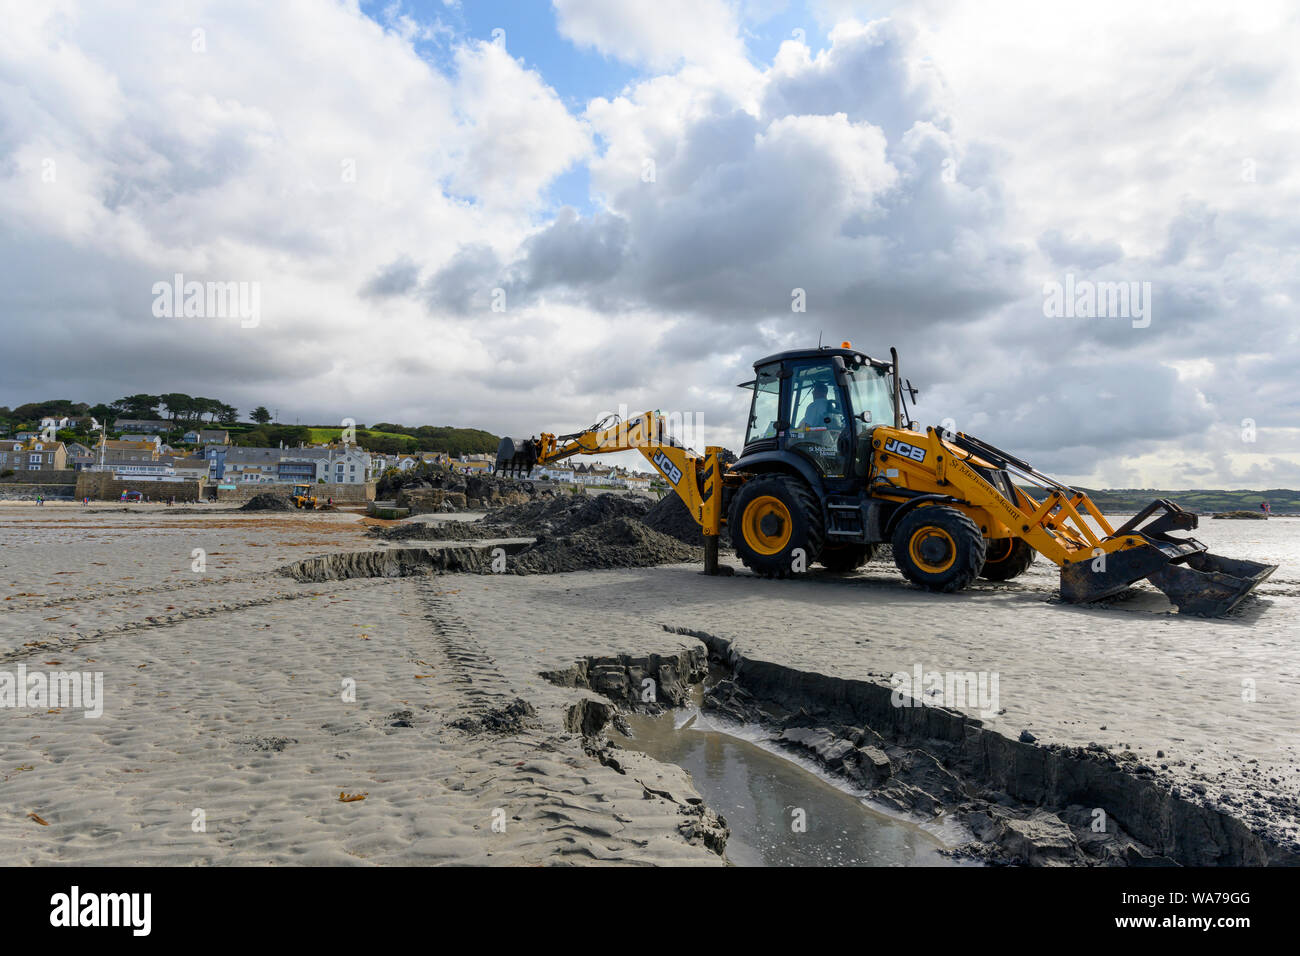 JCB escavatrice, scavando un canale nella sabbia per il turista traghetti, St Michael's Mount, Marazion, vicino a Penzance, Cornwall, Regno Unito Foto Stock